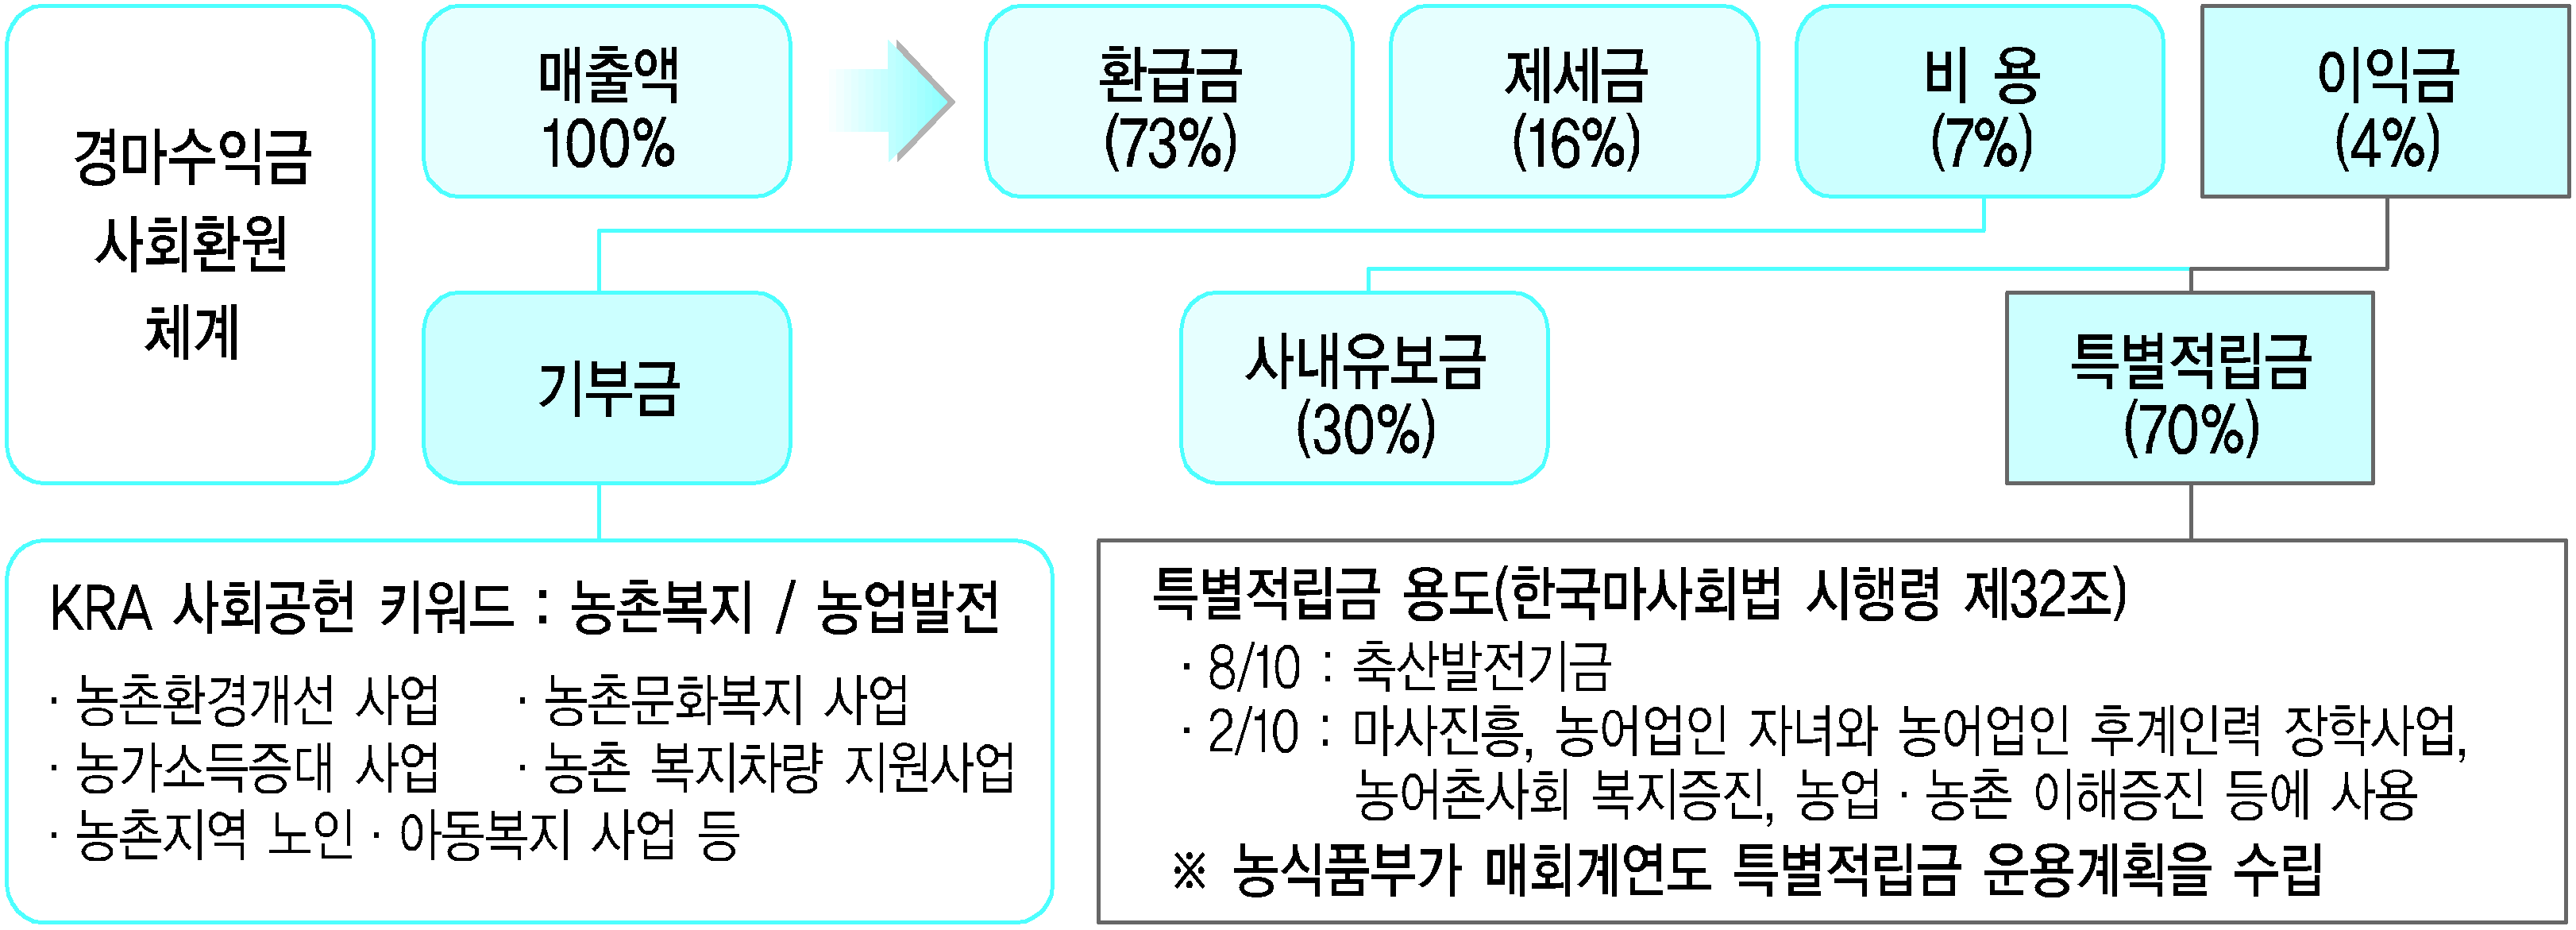 301 다. 특별적립금 운영 한국마사회는 총 매출액에서 환급금 73%, 제세금 16%, 비용 7%를 제외한 이익금 4% 중 70%를 특별적립금으로 조성하는 구조를 가지고 있다.